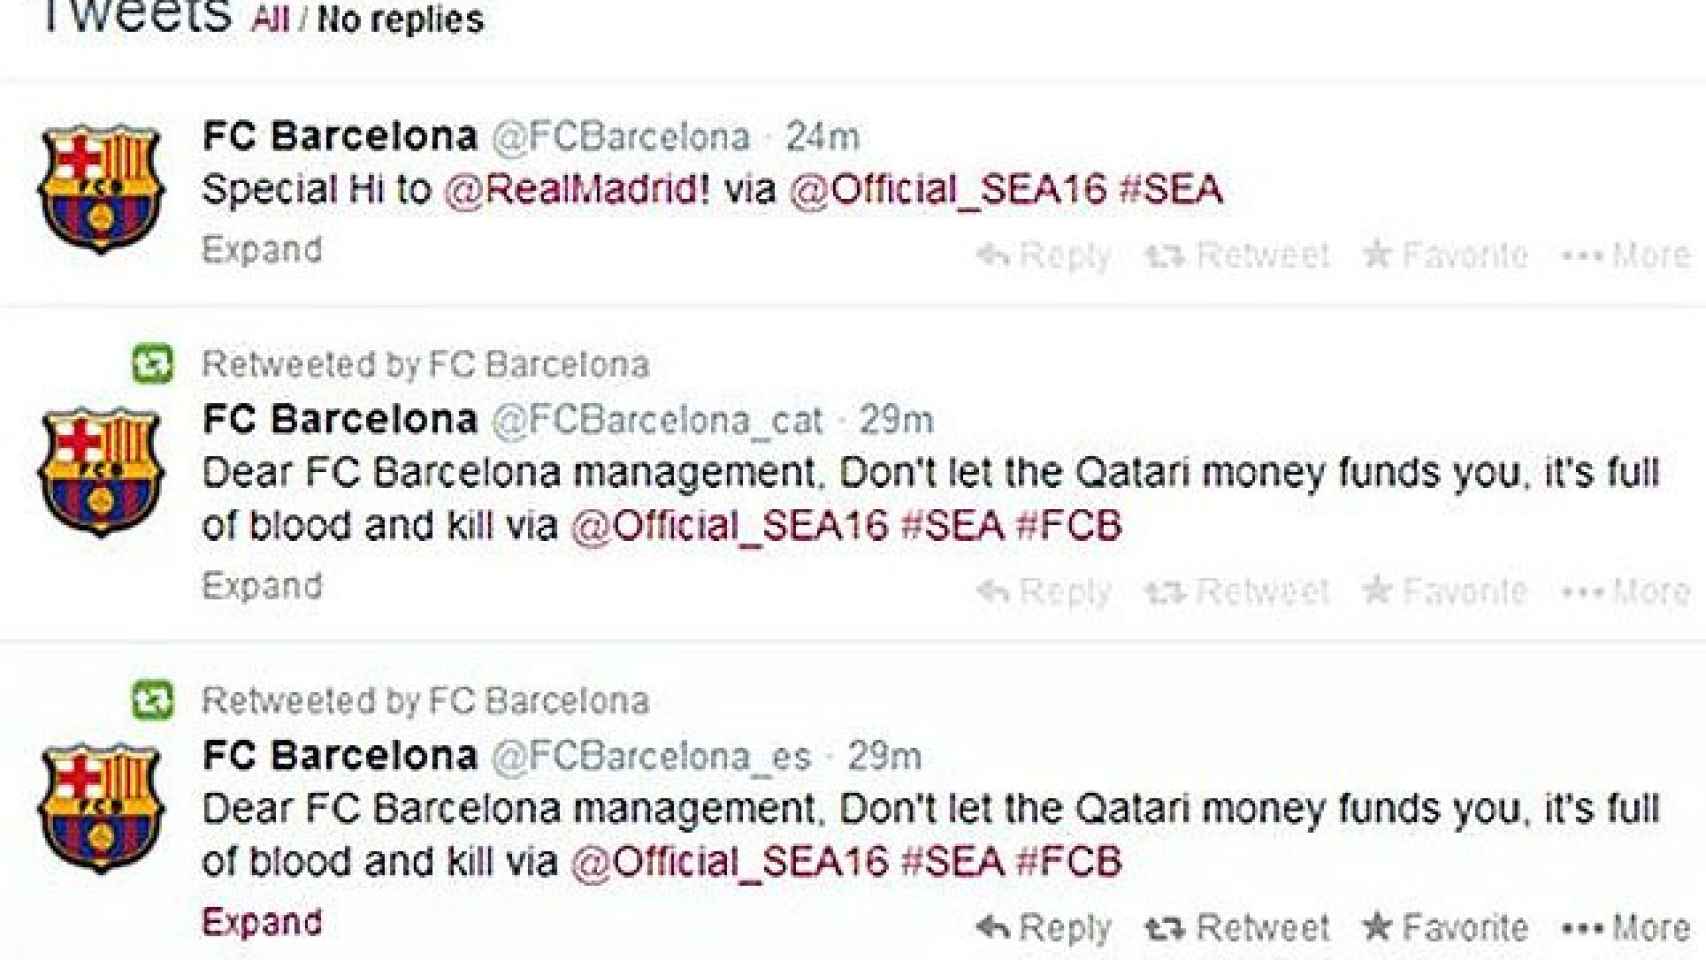 Perfil de Twitter del Barça hackeado